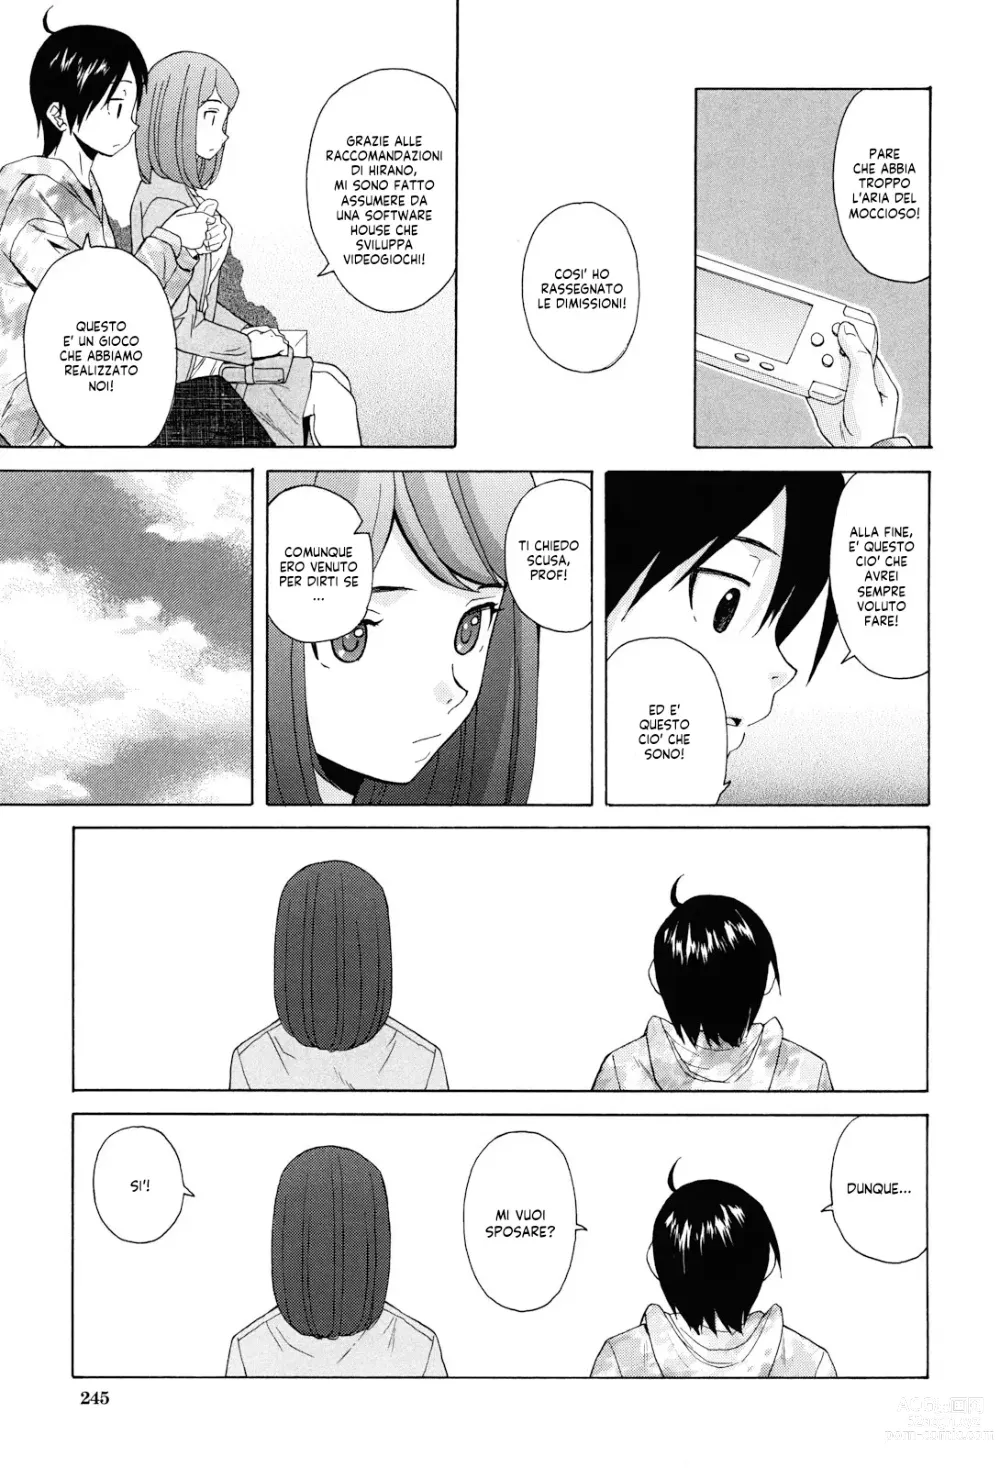 Page 246 of manga Sei Gentilmente Desiderato dalla tua Prof (decensored)